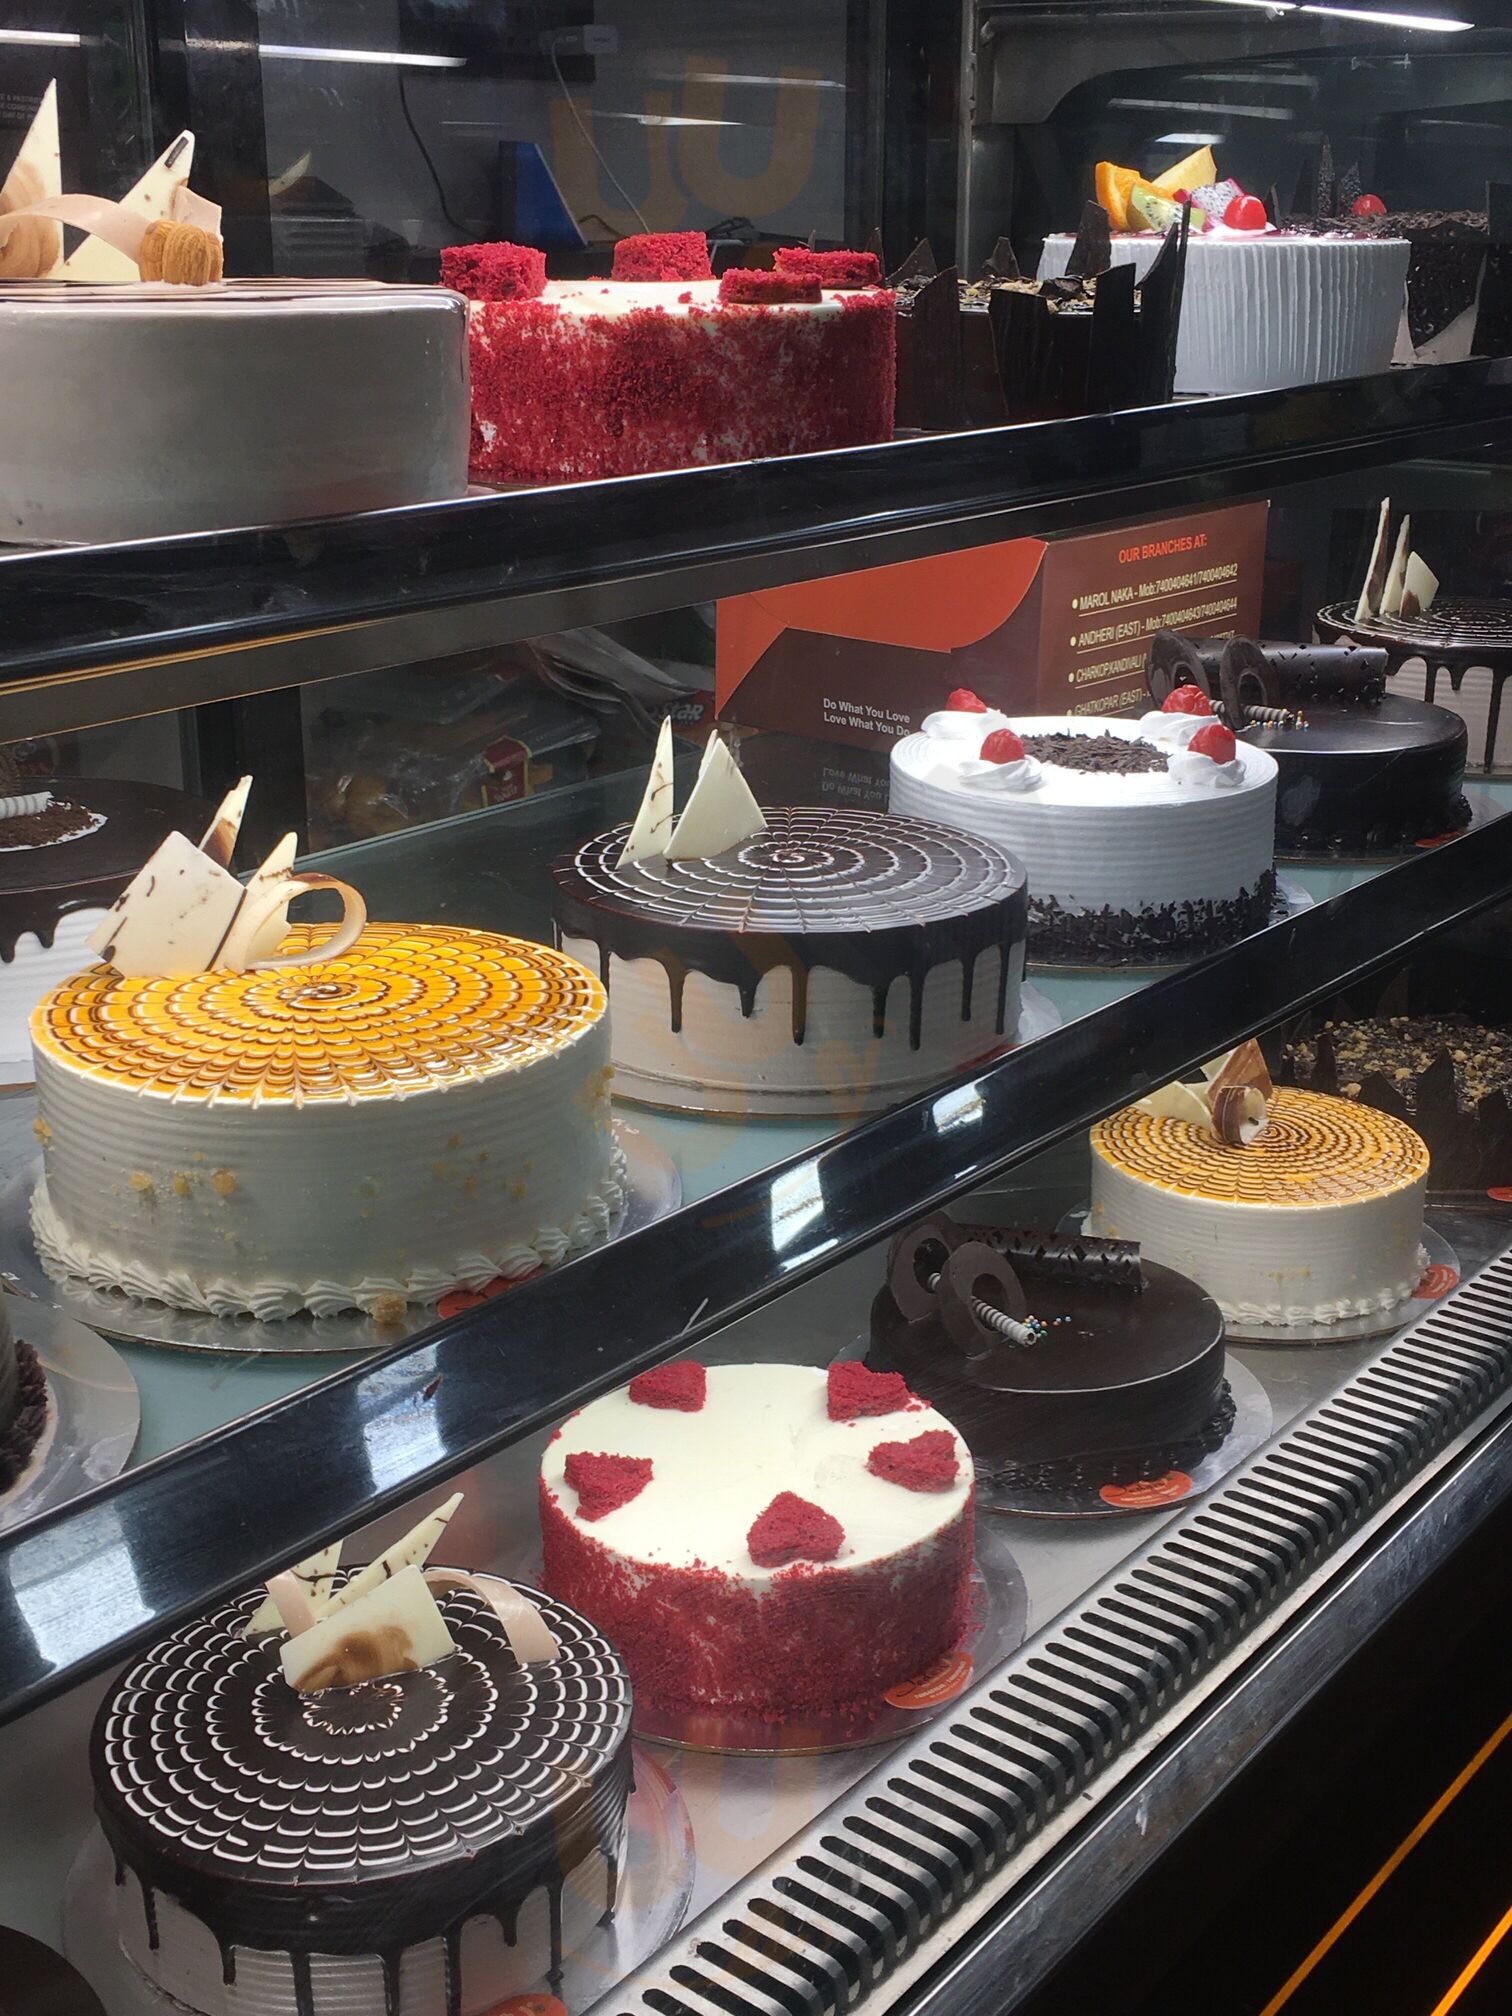 Front street bakery dessert cakes offer at Metro